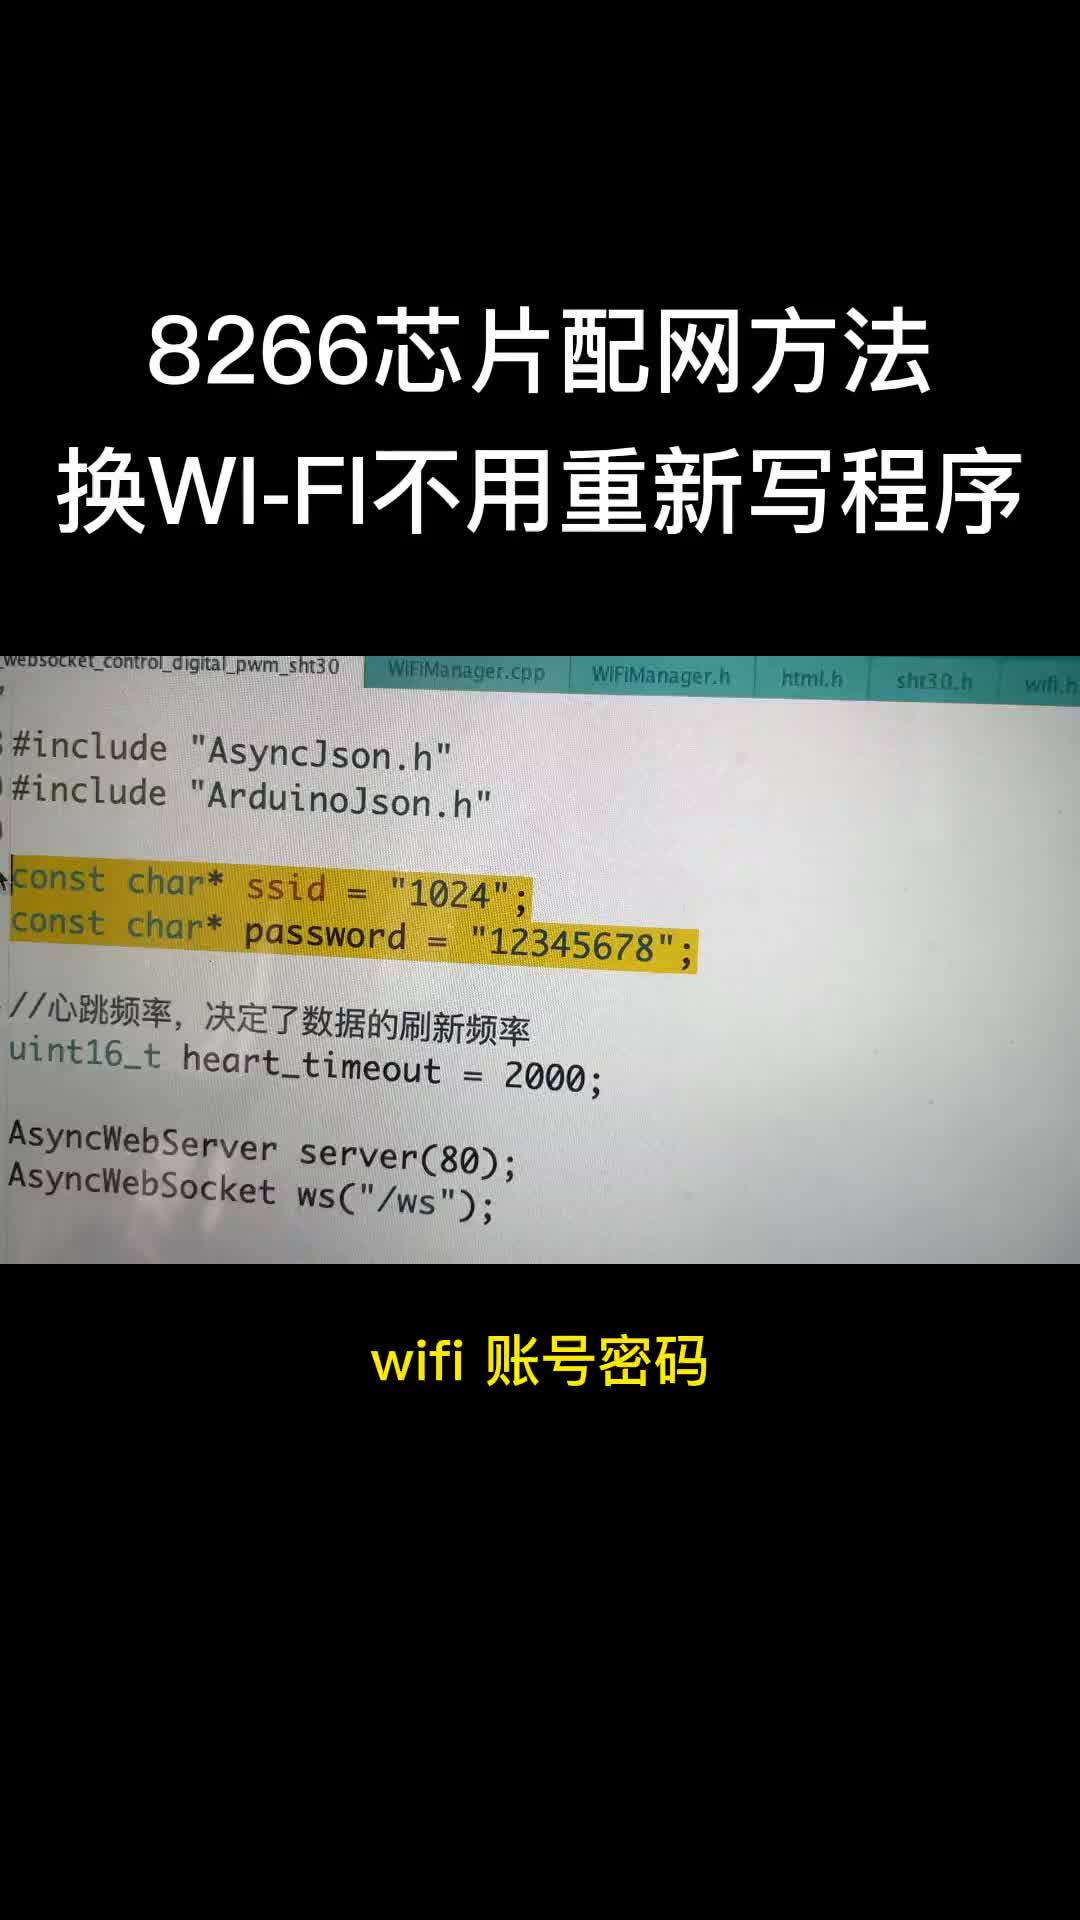 写在程序中的WI-FI，每次更换都要重写，这回试试配网吧。#esp8266 #arduino 